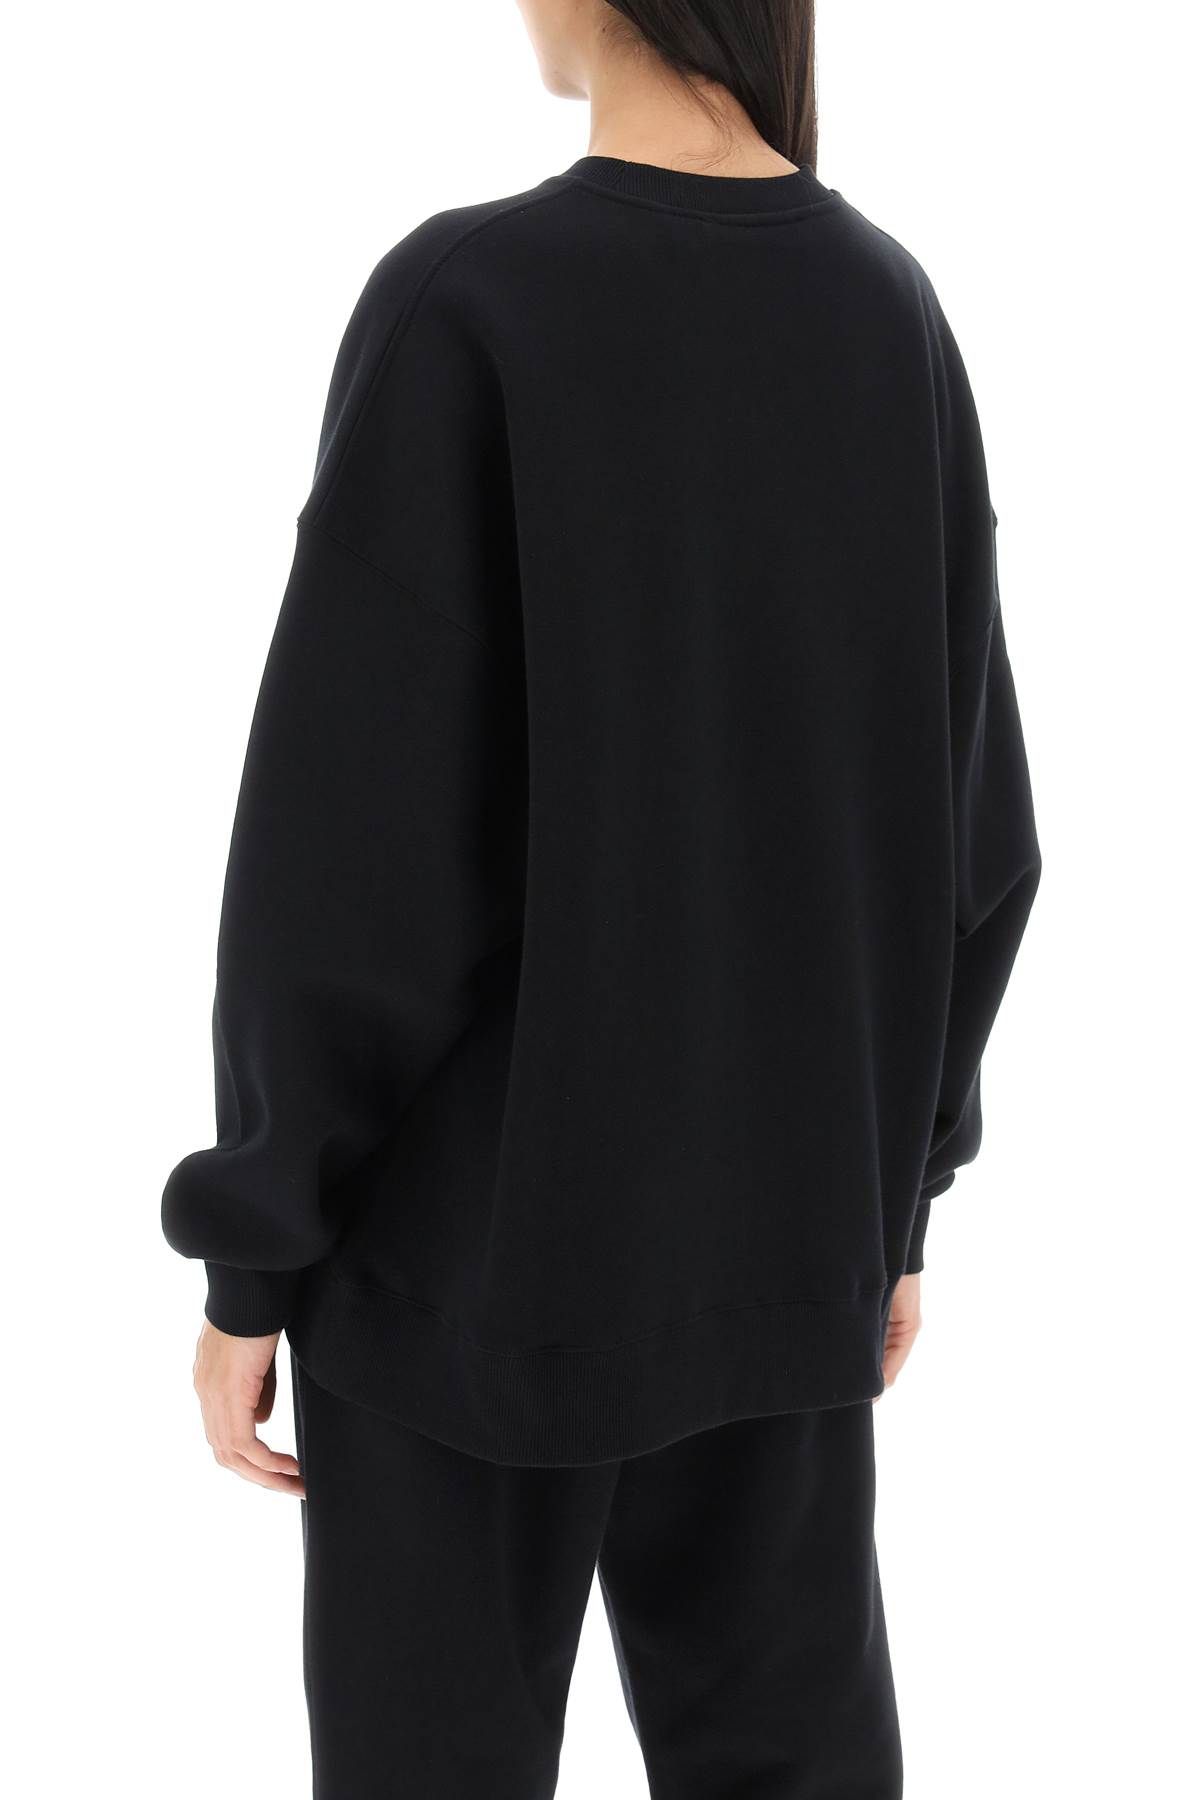 Shop Rotate Birger Christensen Crew-neck Sweatshirt With Logo Embroidery In Black